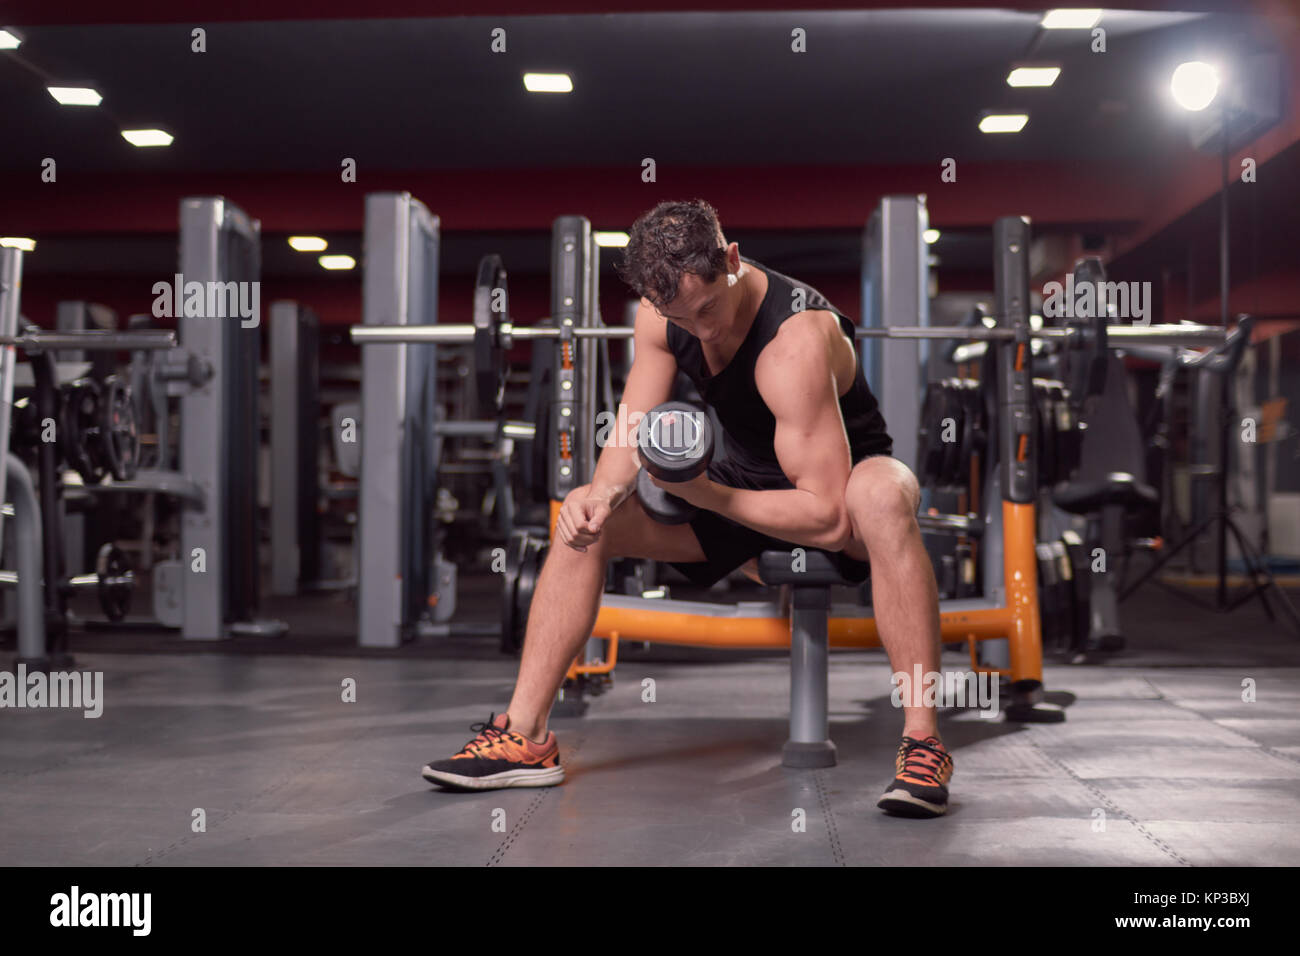 Un hombre joven, gimnasio oscuro en interiores, equipos de gimnasia, una mano pesa bíceps ejercicio, banco para sentarse. Foto de stock